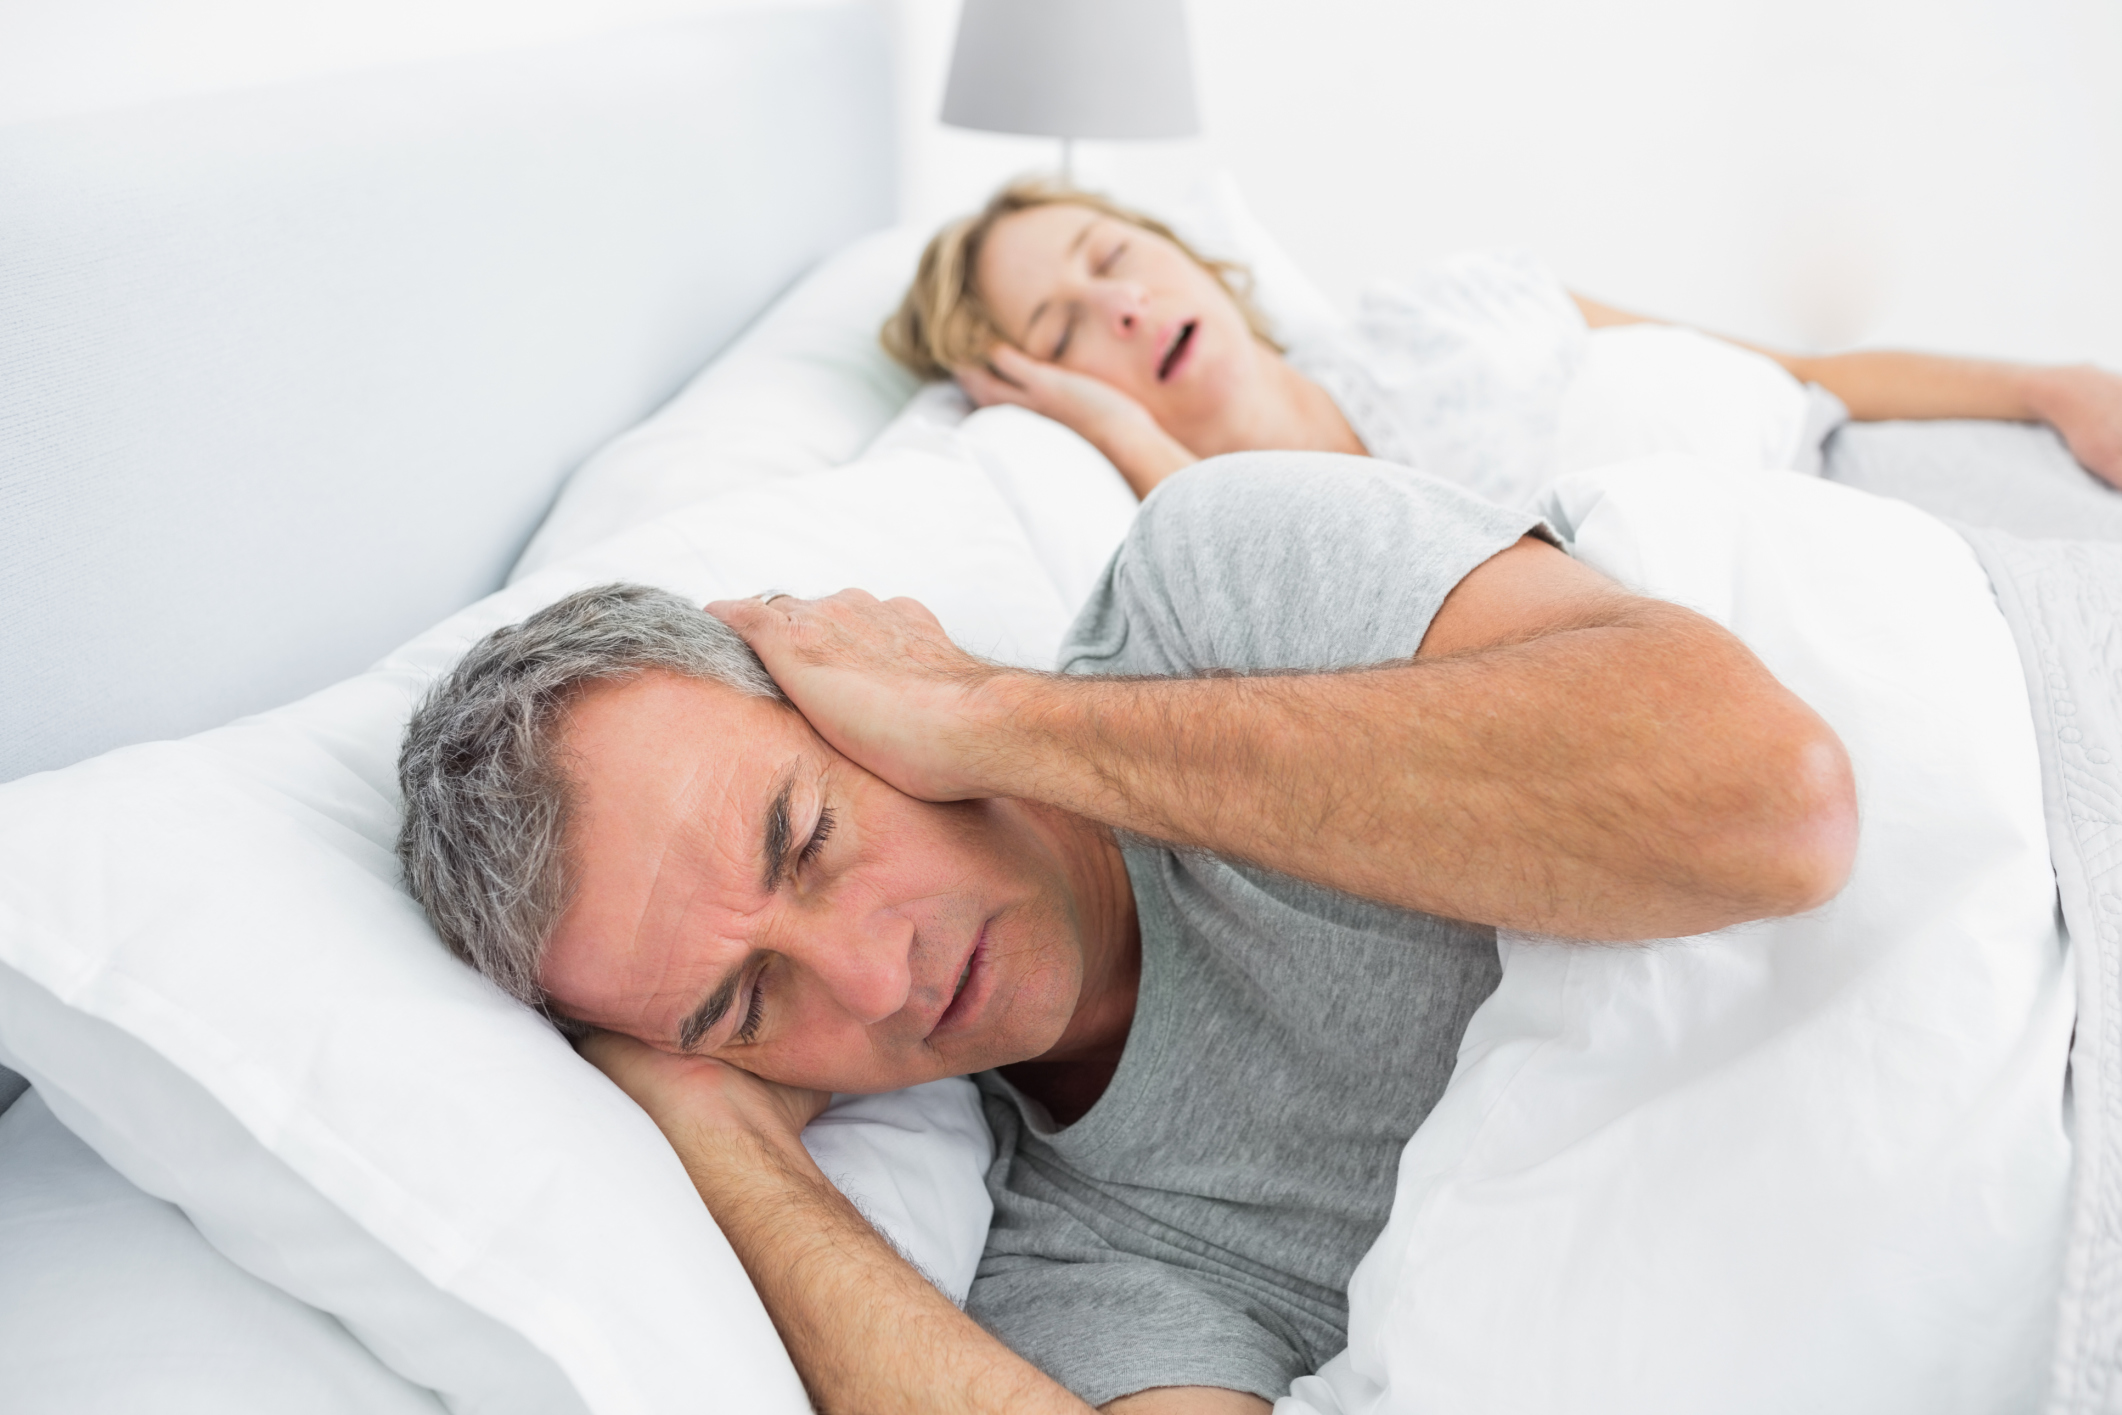 Obstructive sleep apnea may incr...